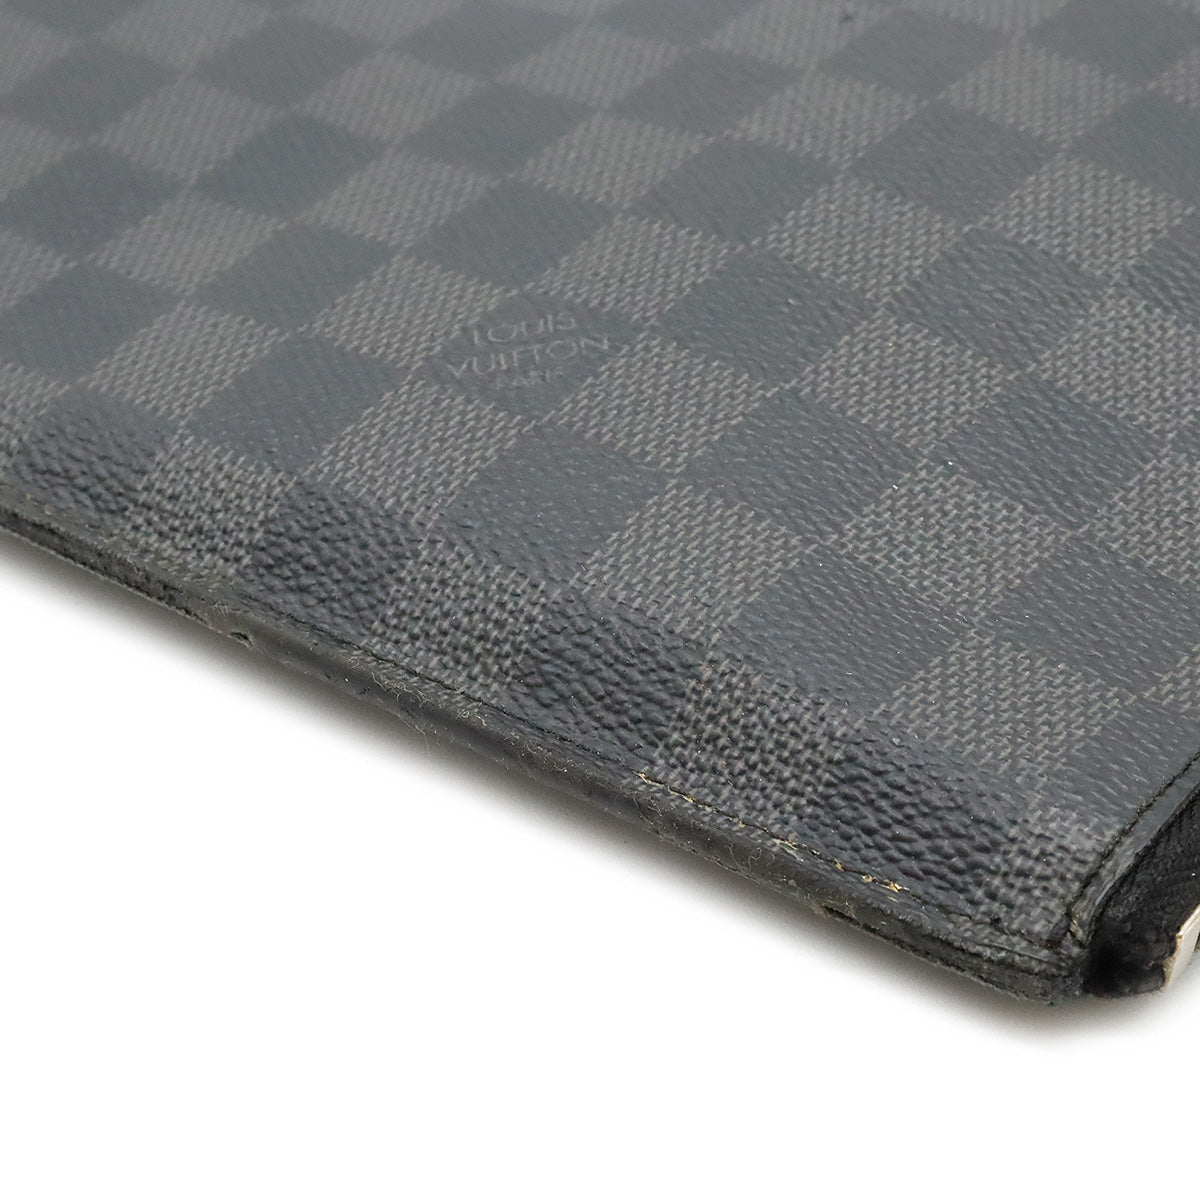 Louis Vuitton - Authenticated Pochette Jour GM Bag - Cloth Black for Men, Very Good Condition